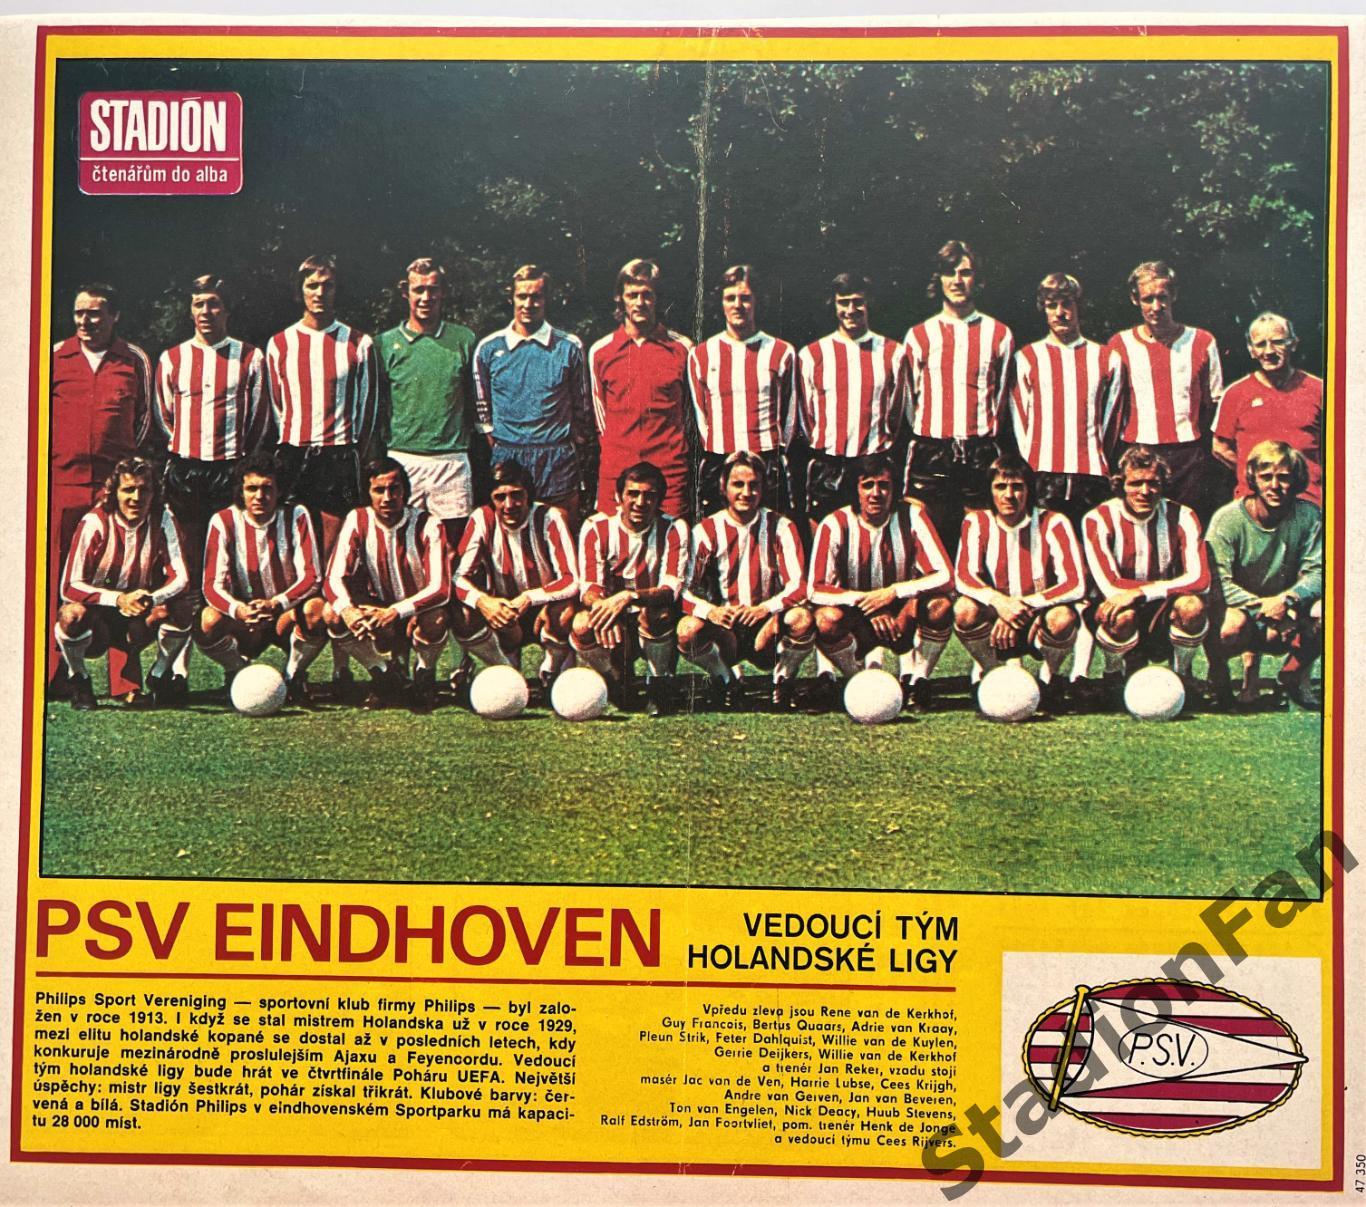 Постер из журнала Стадион (Stadion) - Eindhoven, 1978.